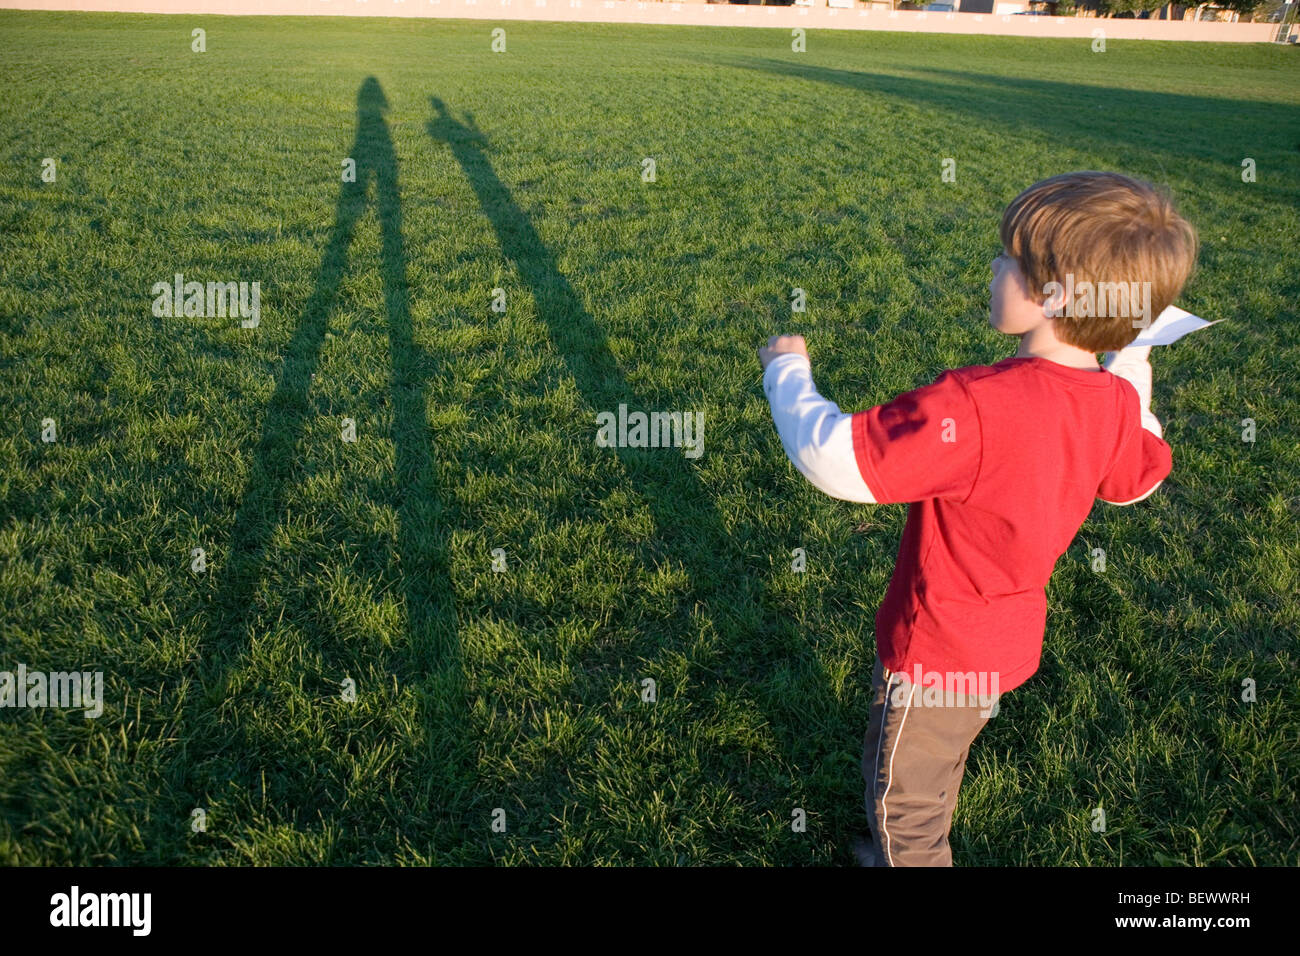 Niño de siete años preparándose para lanzar un avión de papel en un campo abierto Foto de stock